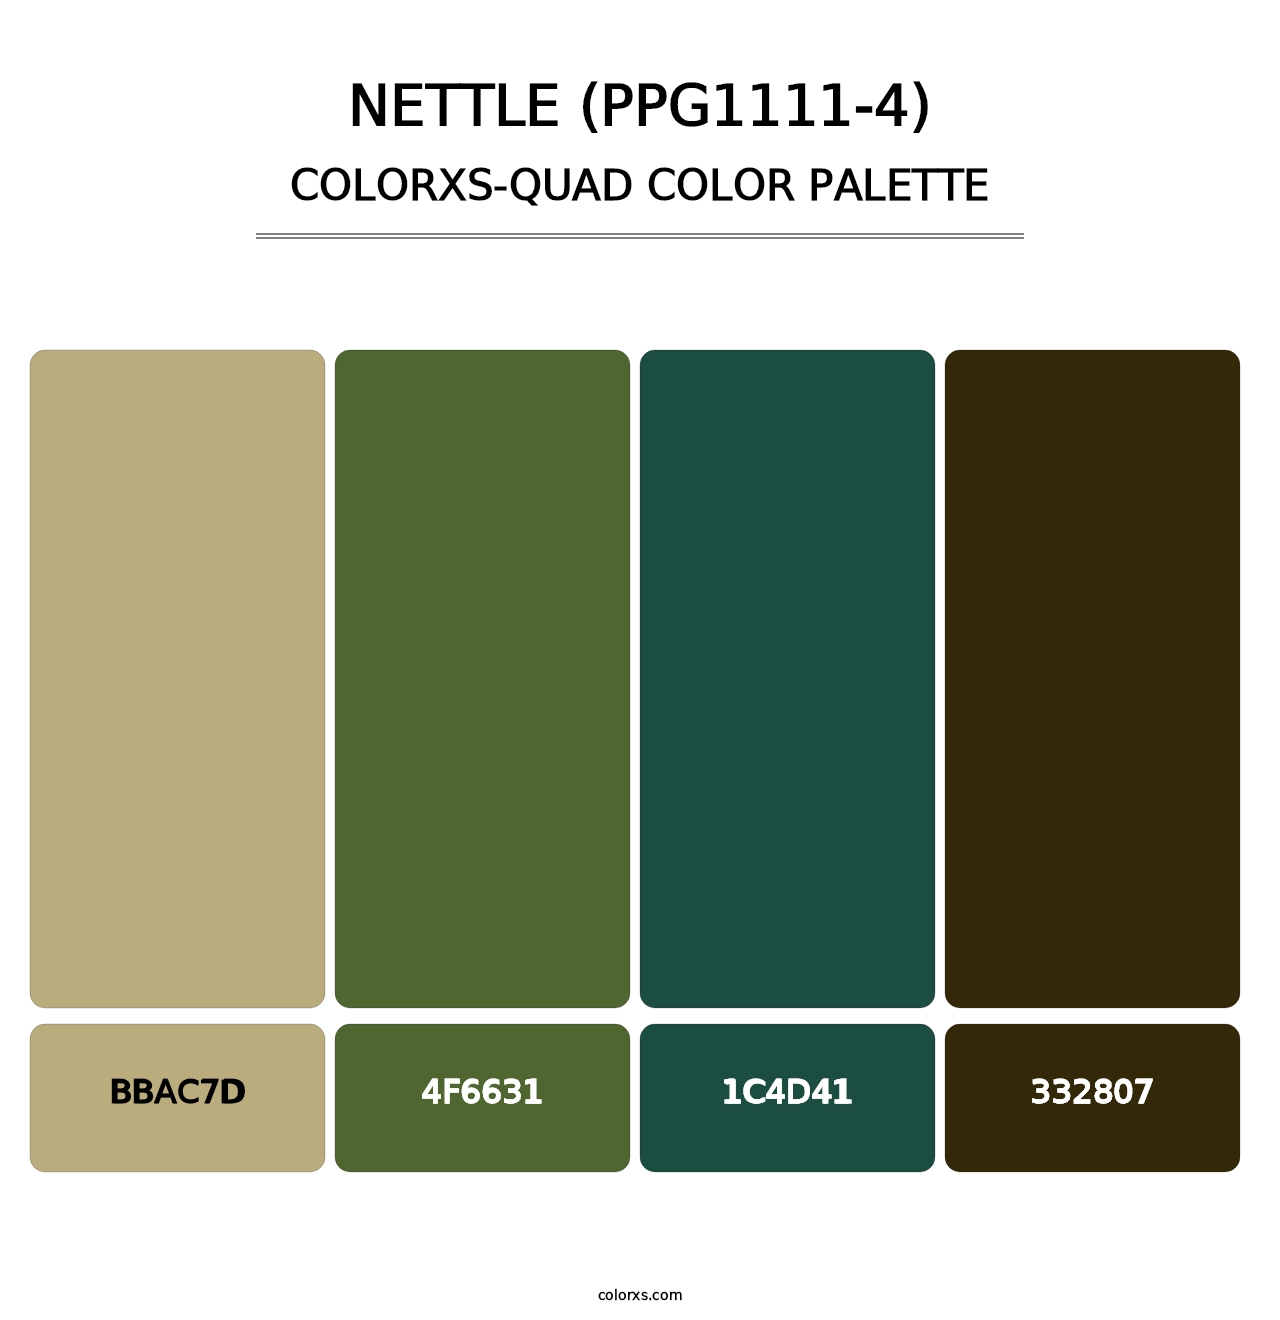 Nettle (PPG1111-4) - Colorxs Quad Palette